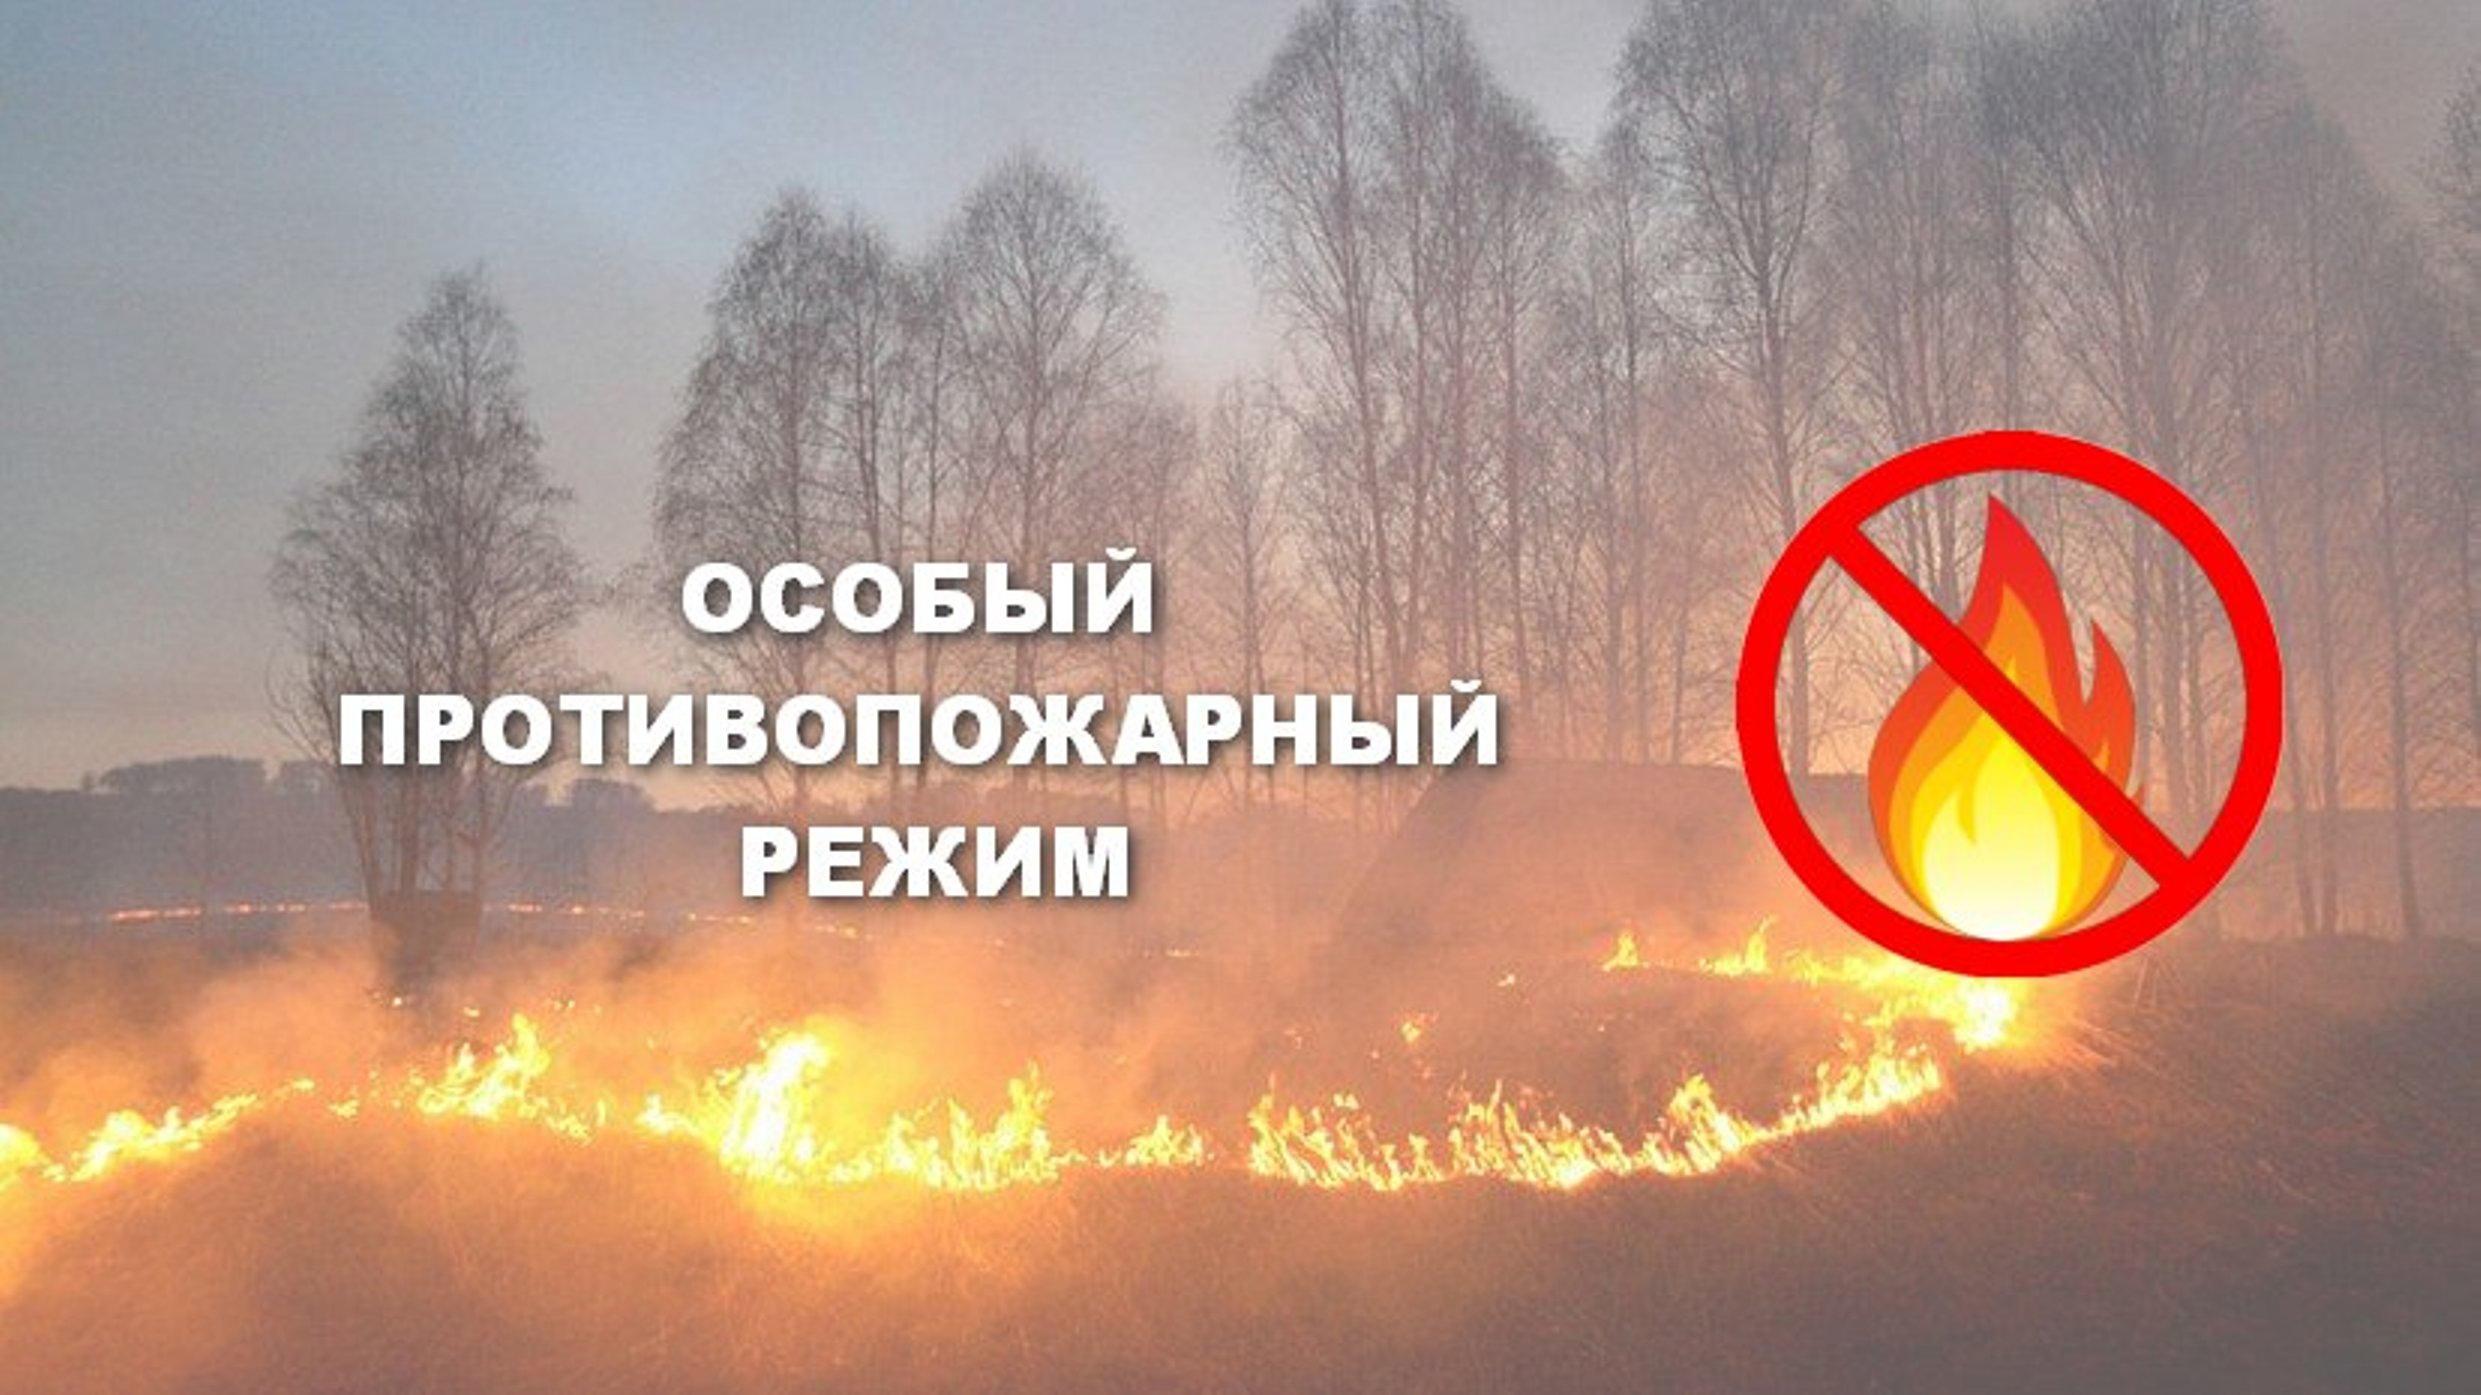 О введении особого противопожарного режима на территории города Югорска